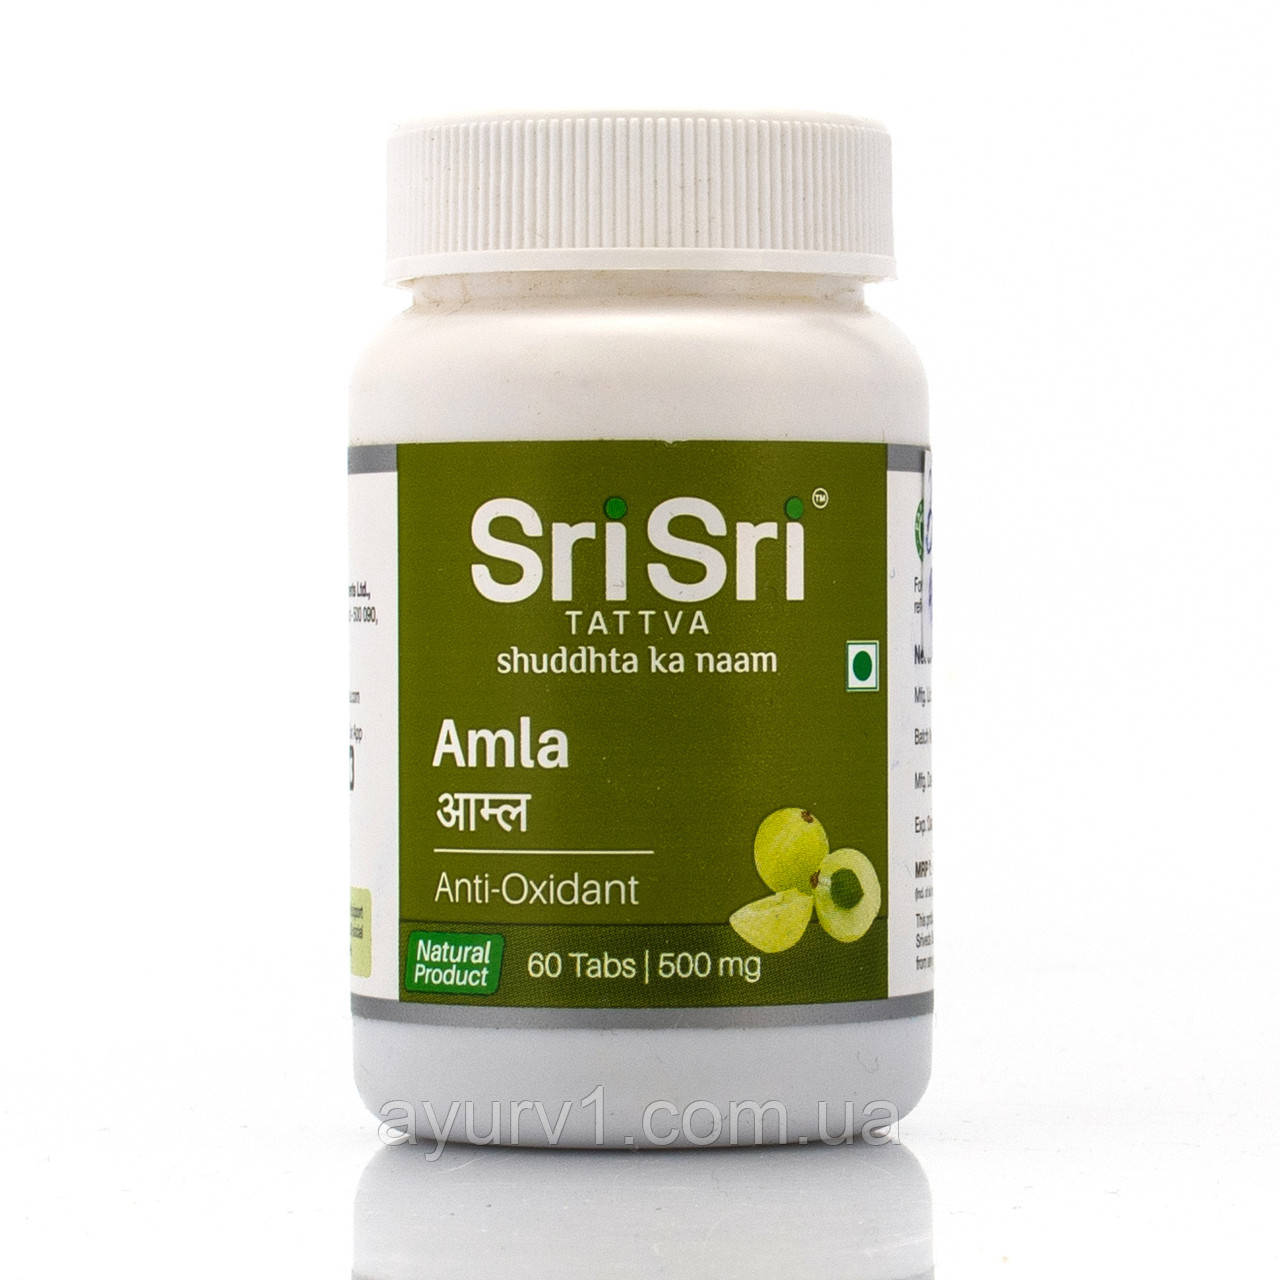 Амла індійський крижовник, Шрі-Сріра Аюрведа/Amla, Sri Sri Ayurveda/60 tab натуральний вітамін С,